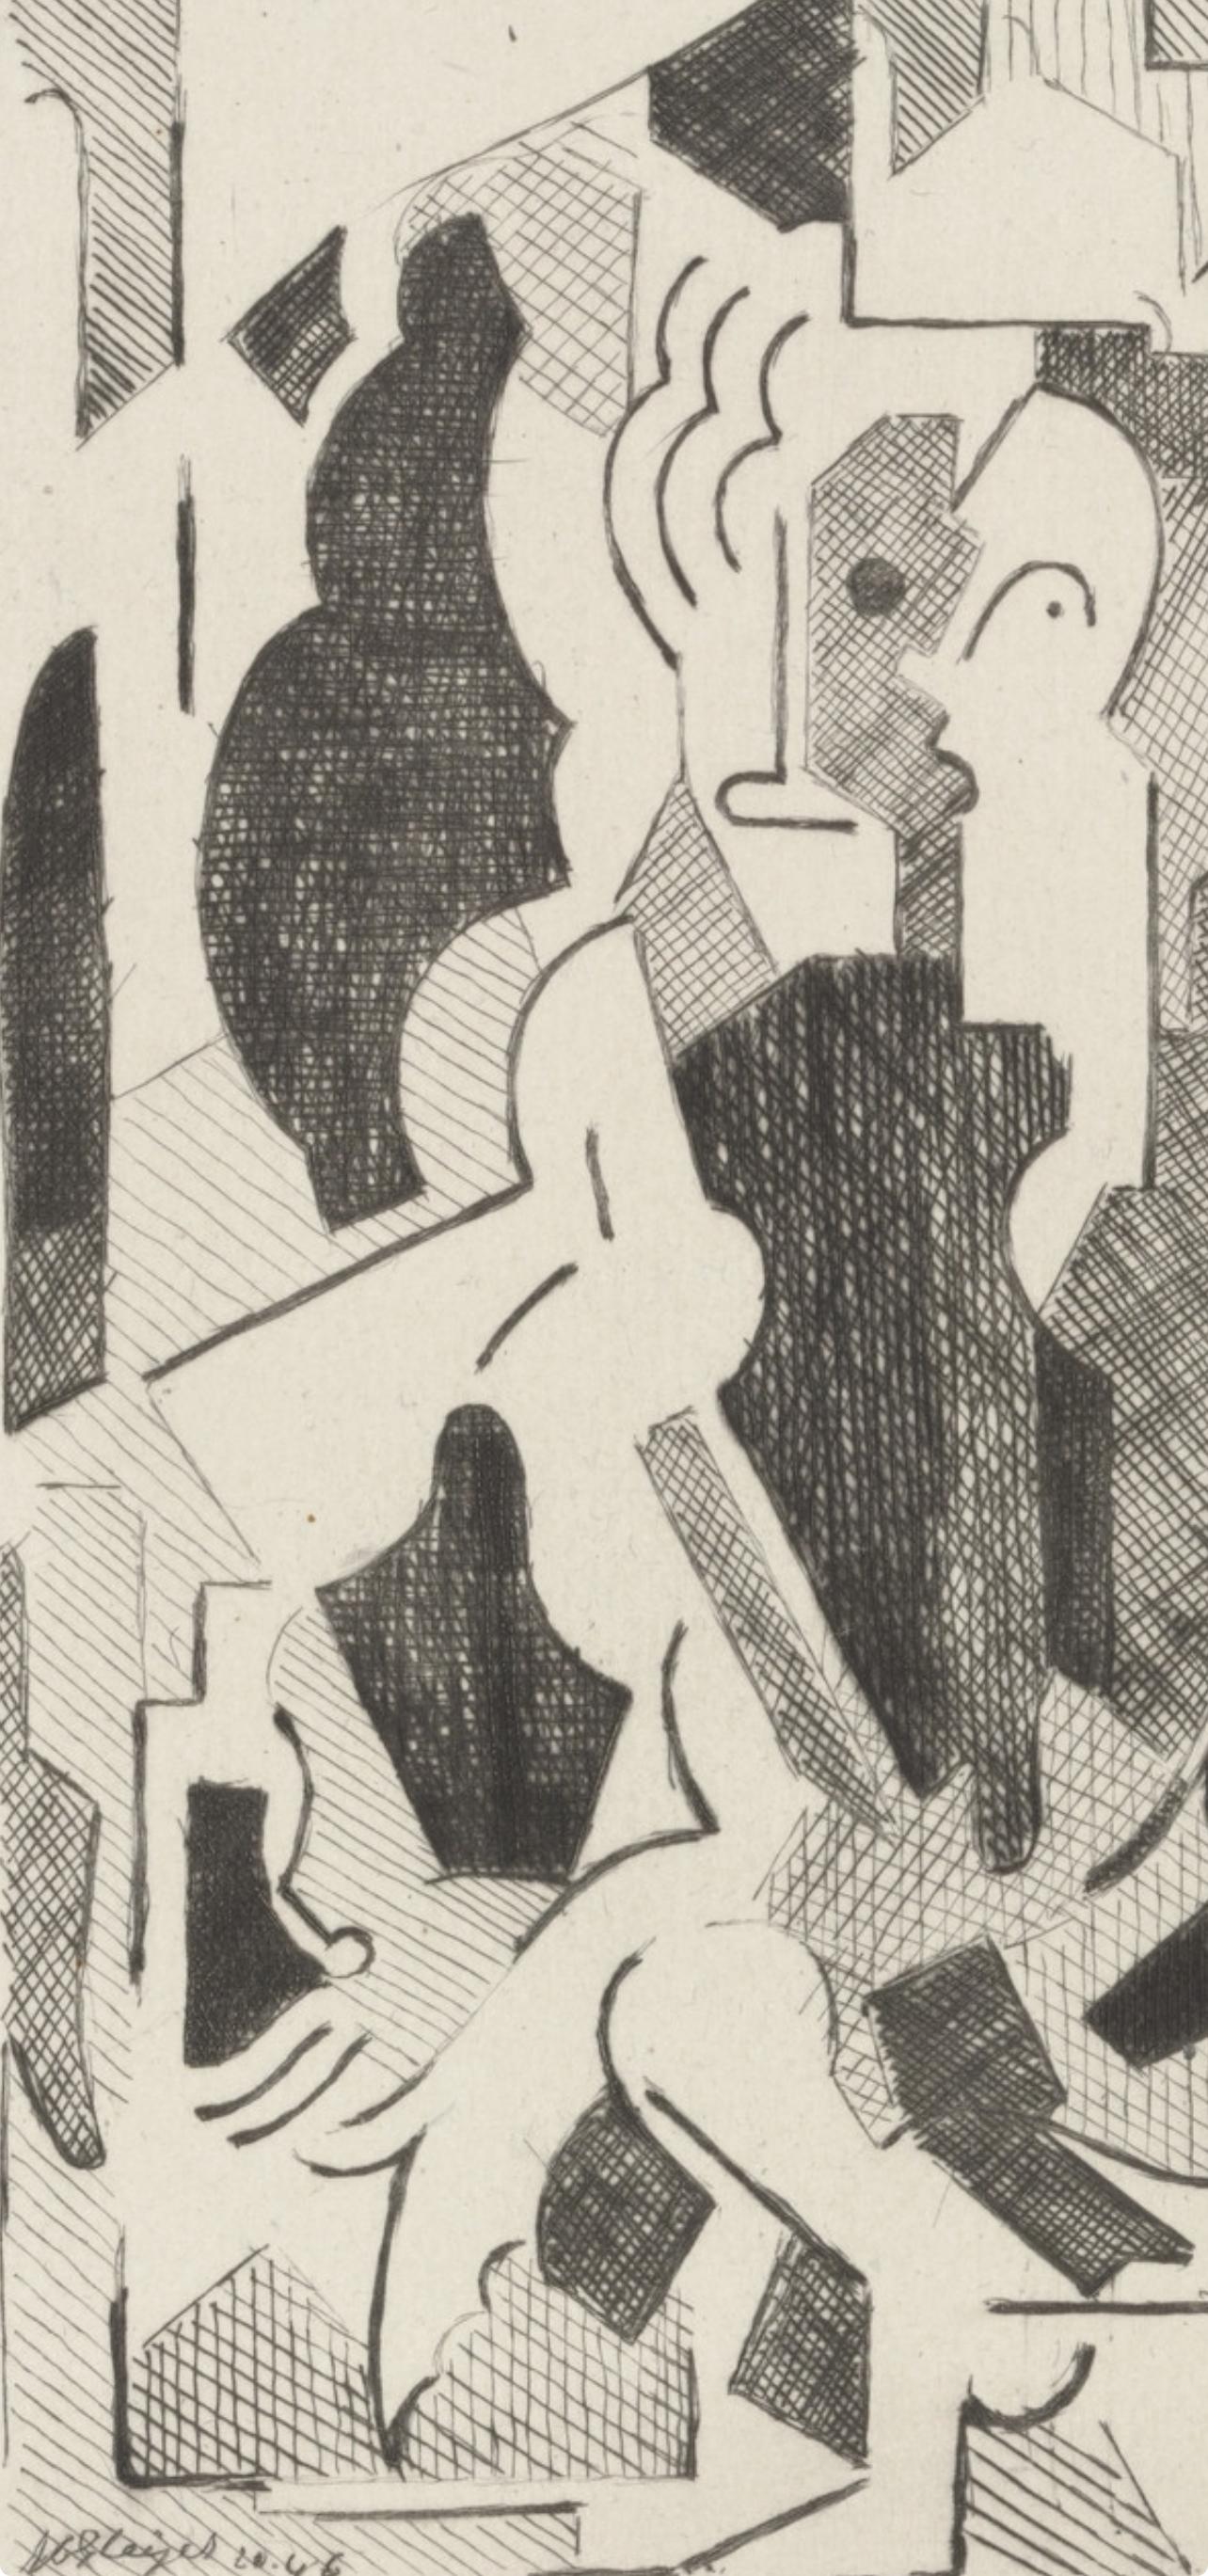 Gleizes, Komposition, Du cubisme (nach) – Print von Albert Gleizes